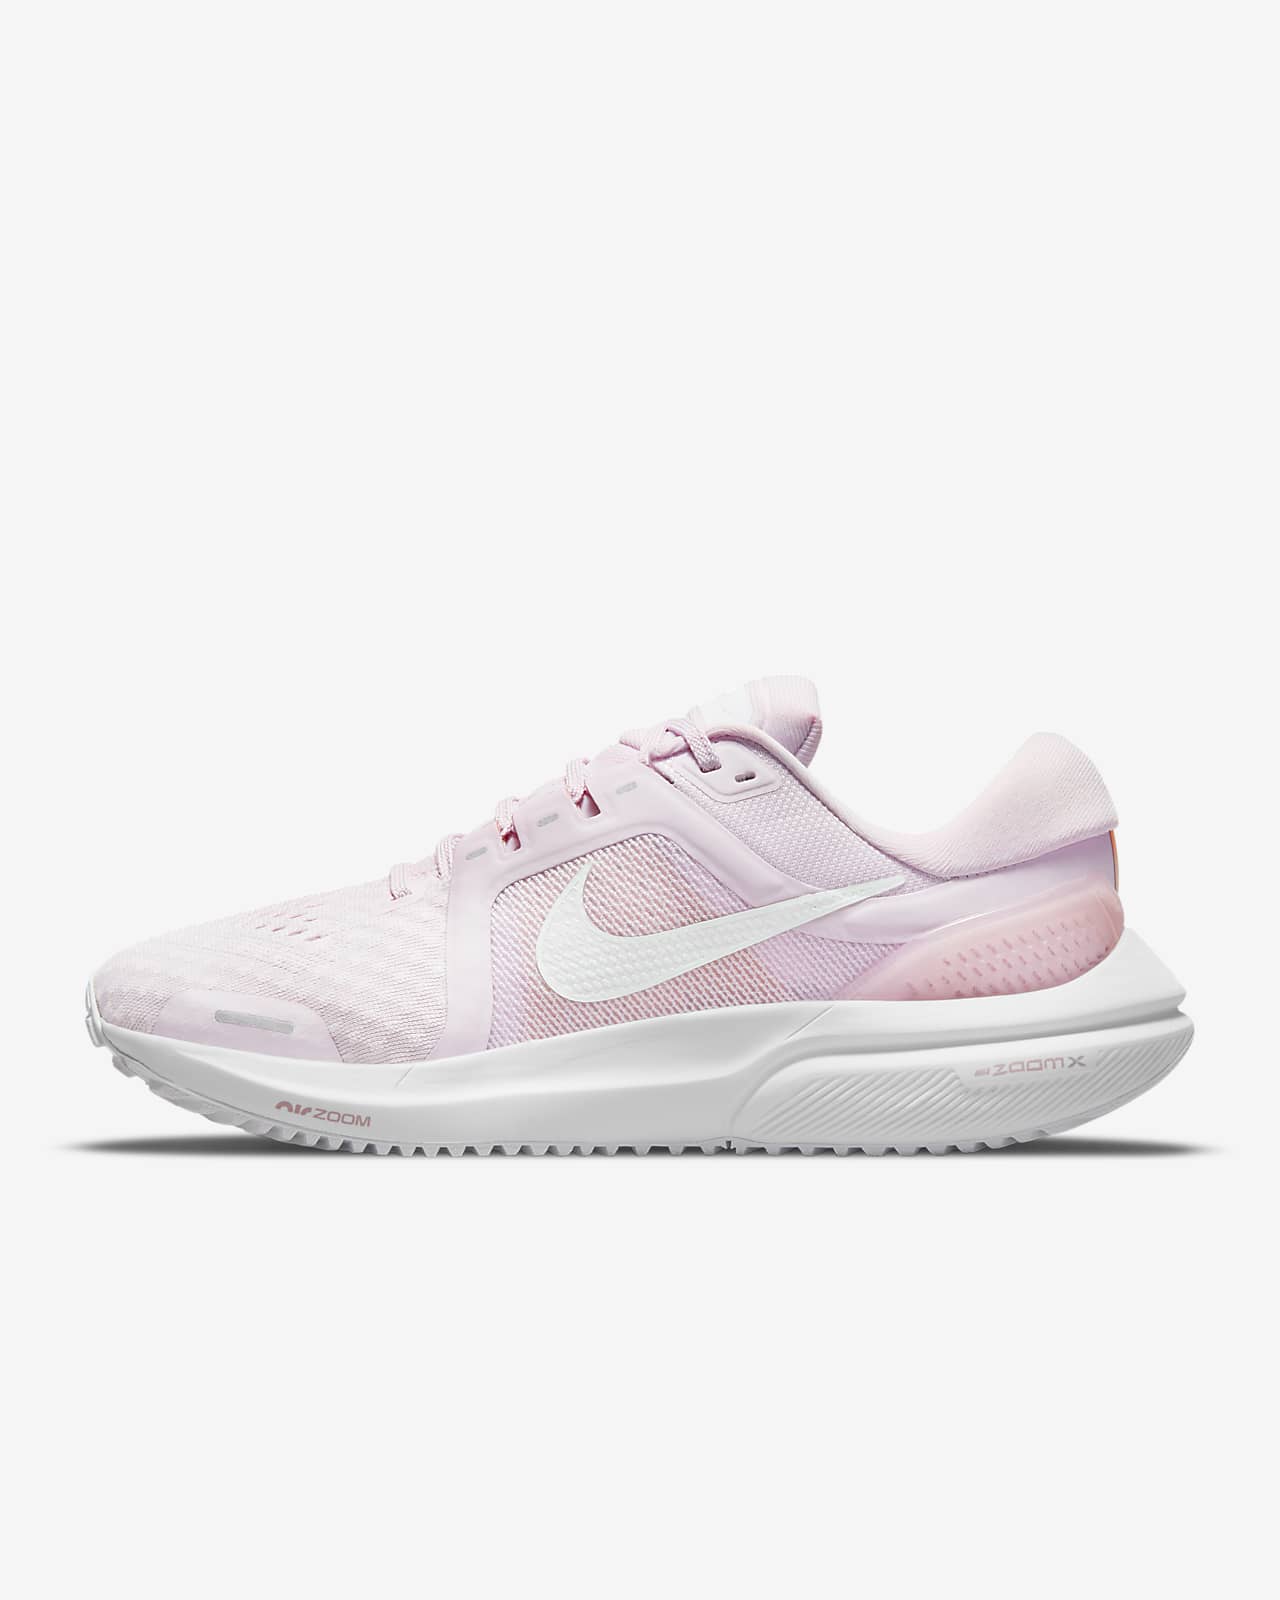 Γυναικεία παπούτσια για τρέξιμο σε δρόμο Nike Air Zoom Vomero 16